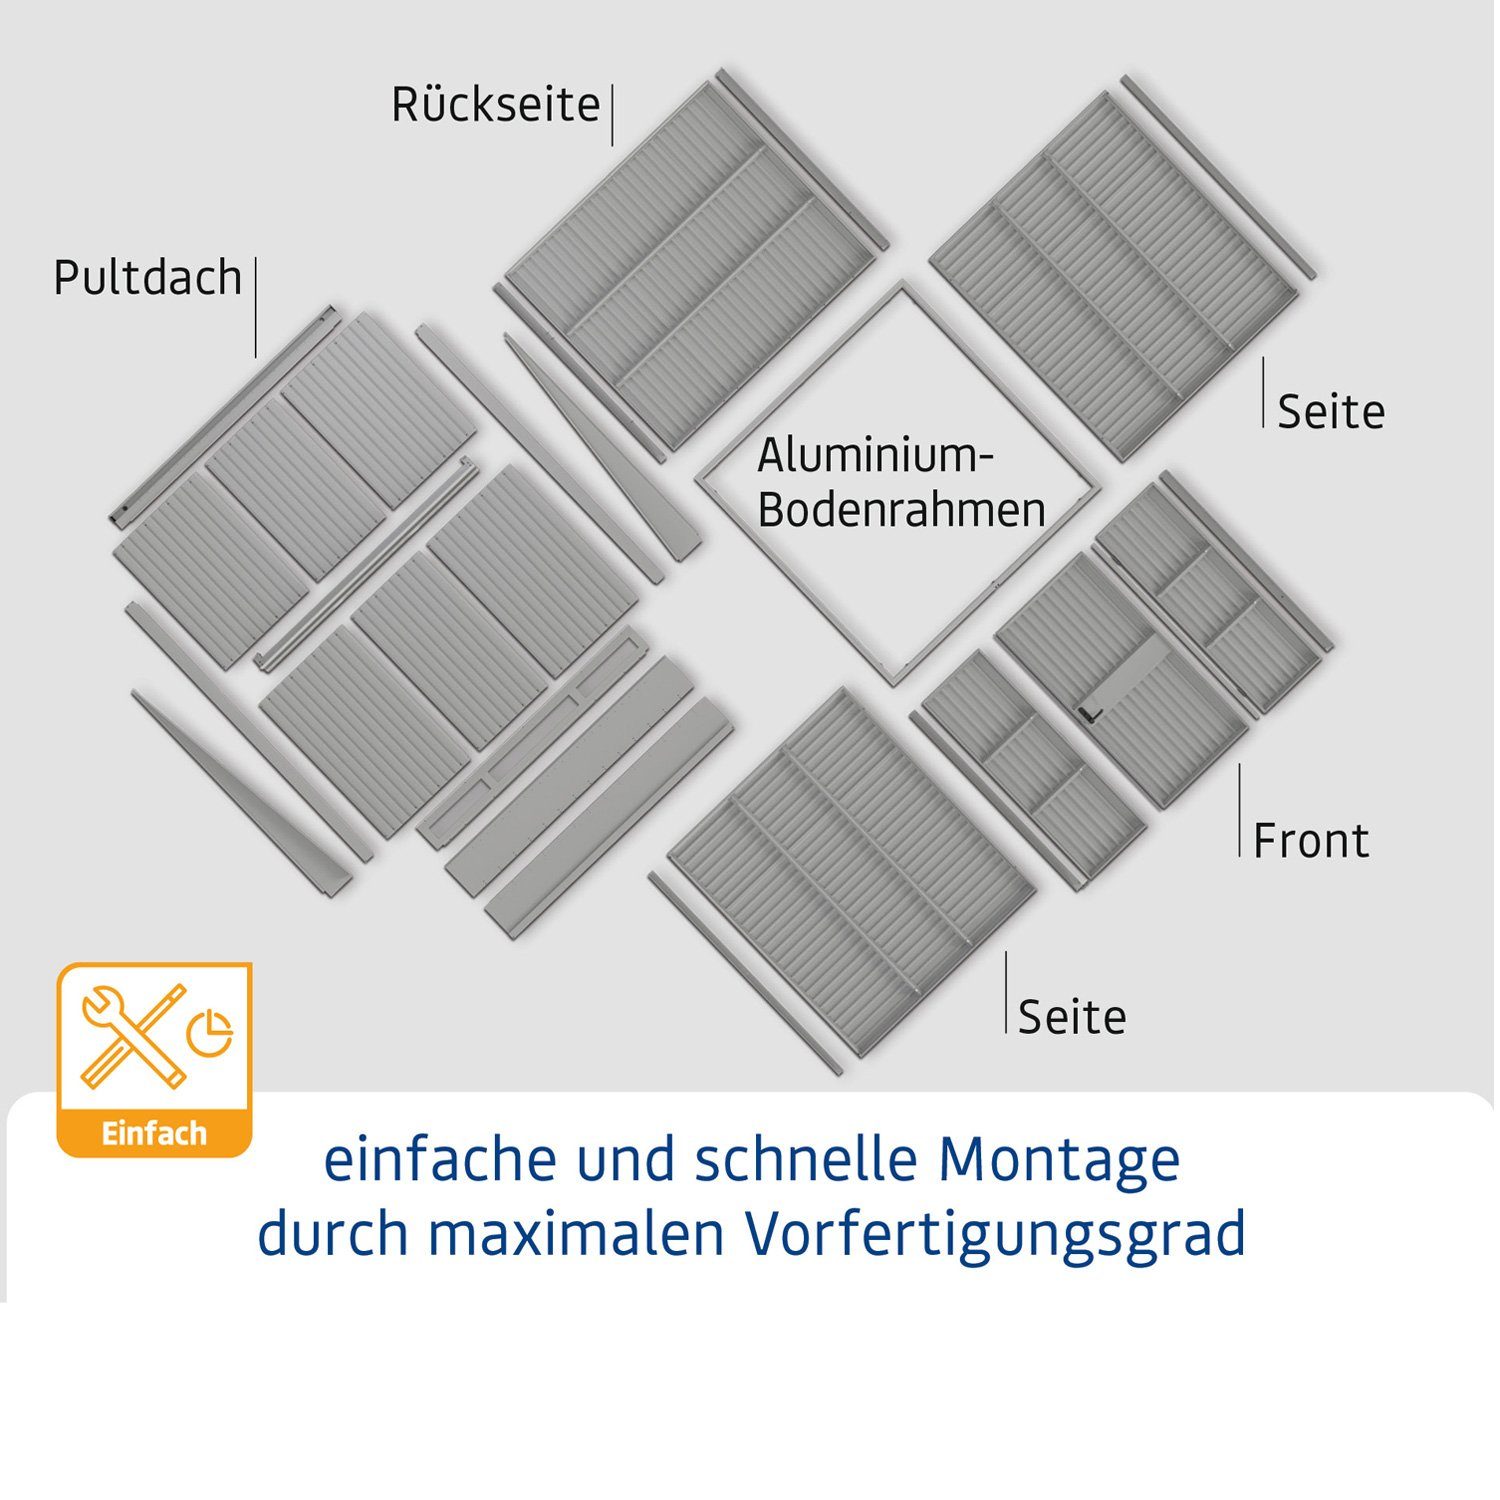 Hörmann Ecostar Gerätehaus Trend Metall-Gerätehaus 2-flüglige anthrazitgrau Pultdach mit Typ Tür 3